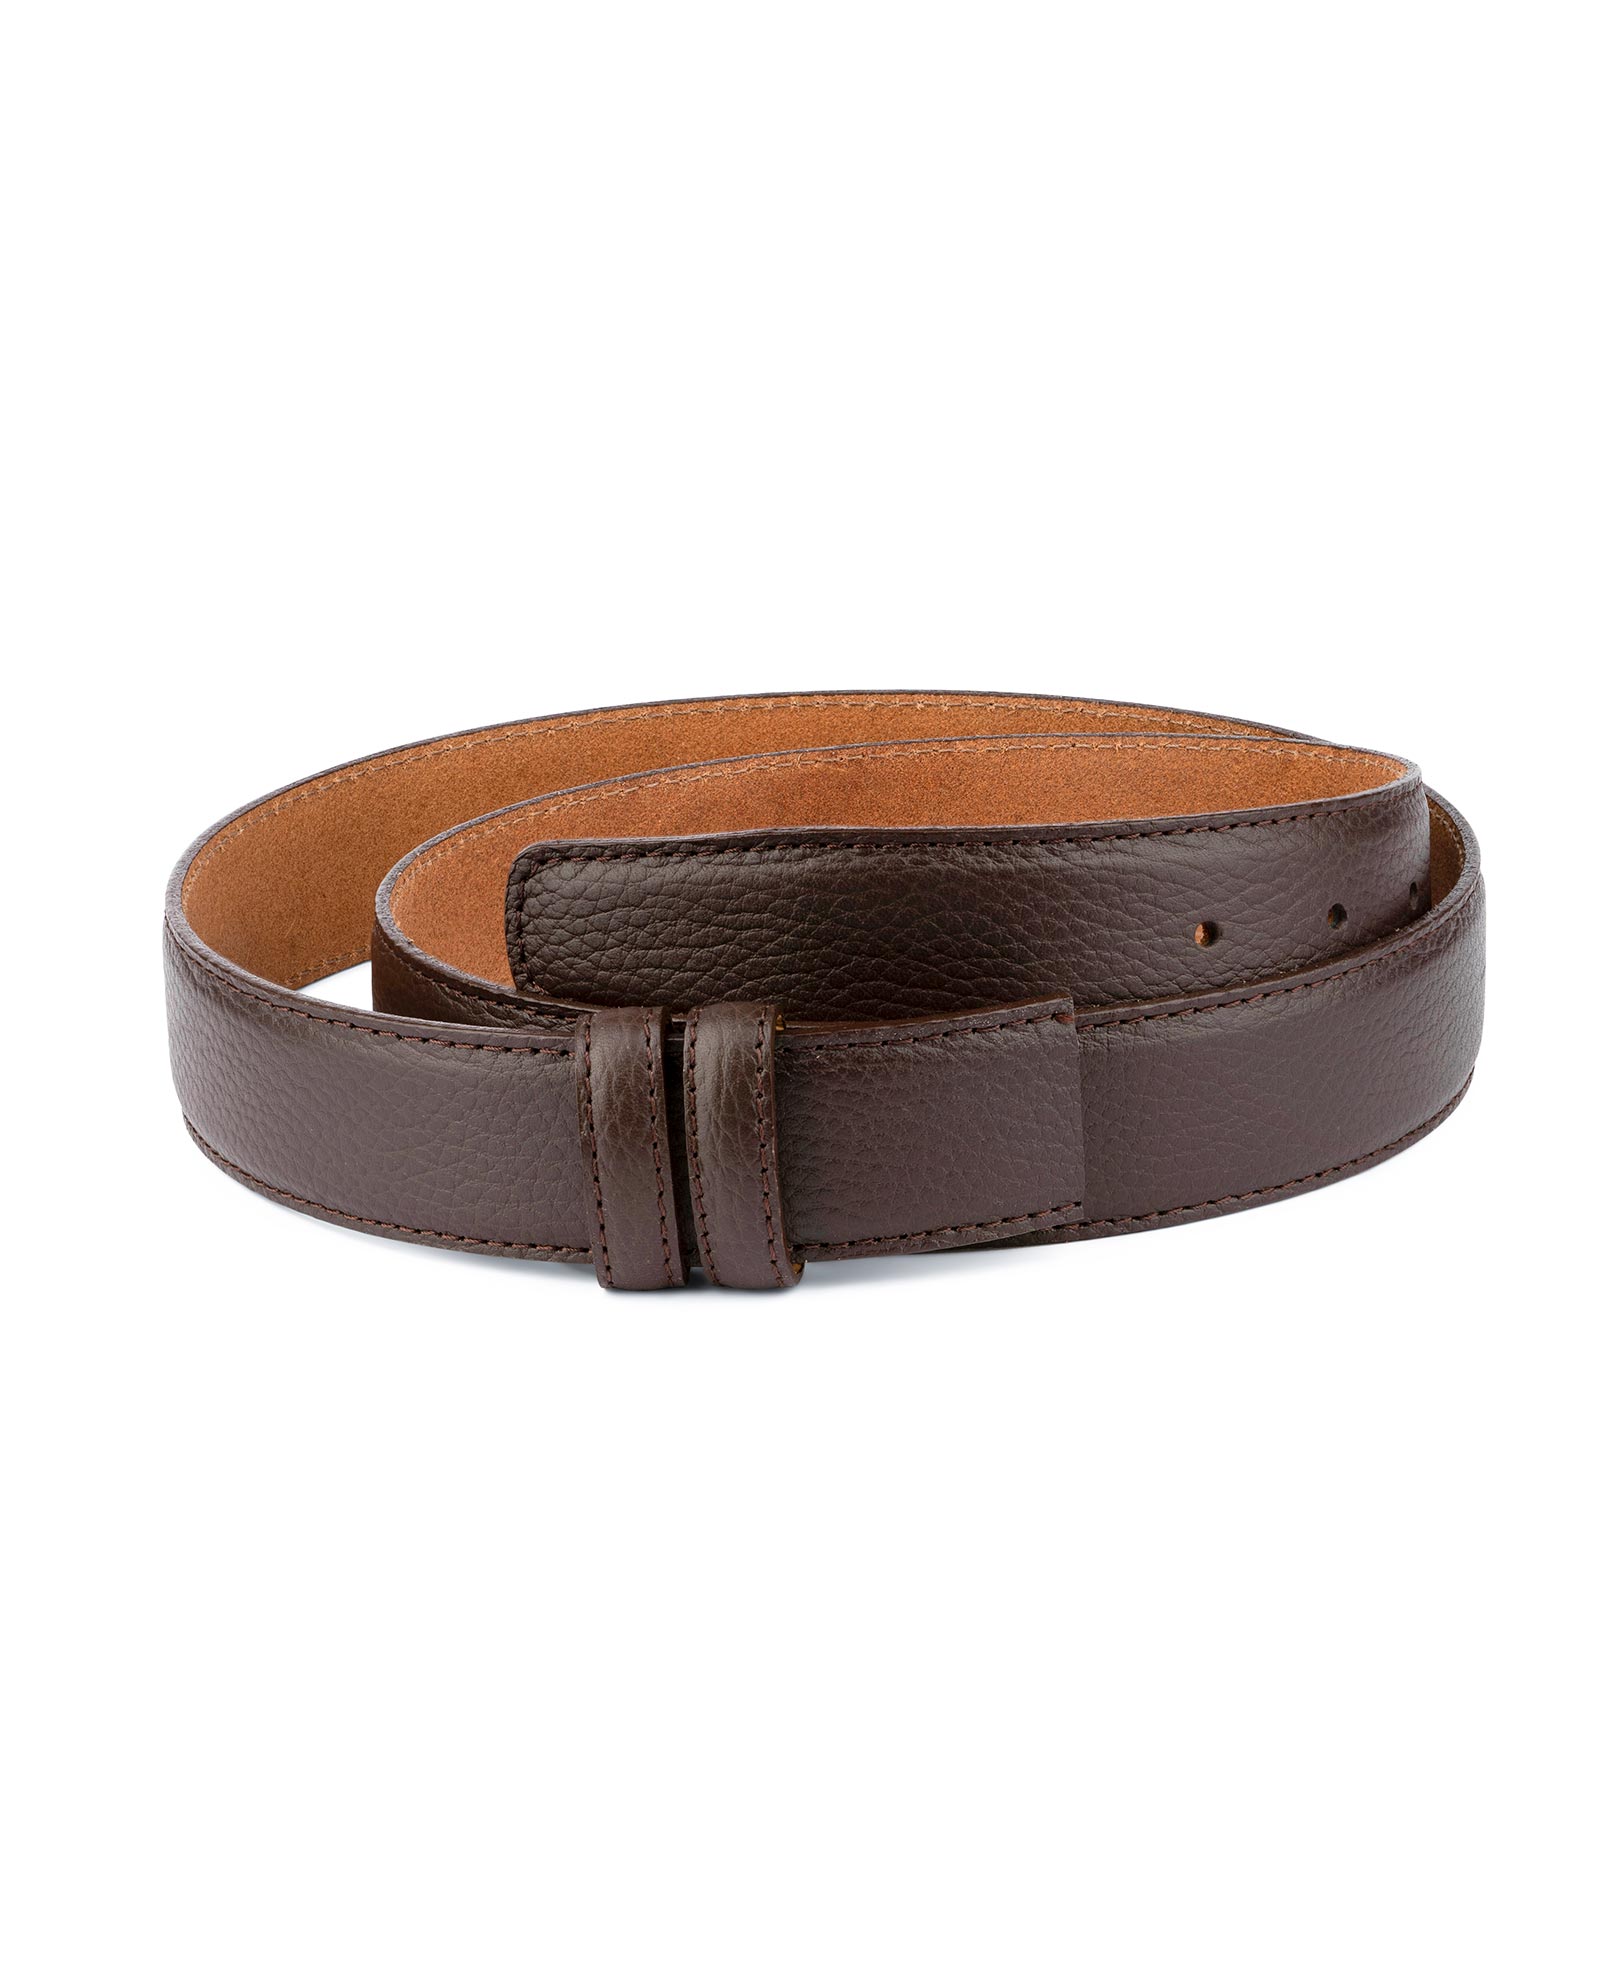 Buy Brown Leather Strap | For Men's Belts | LeatherBeltsOnline.com